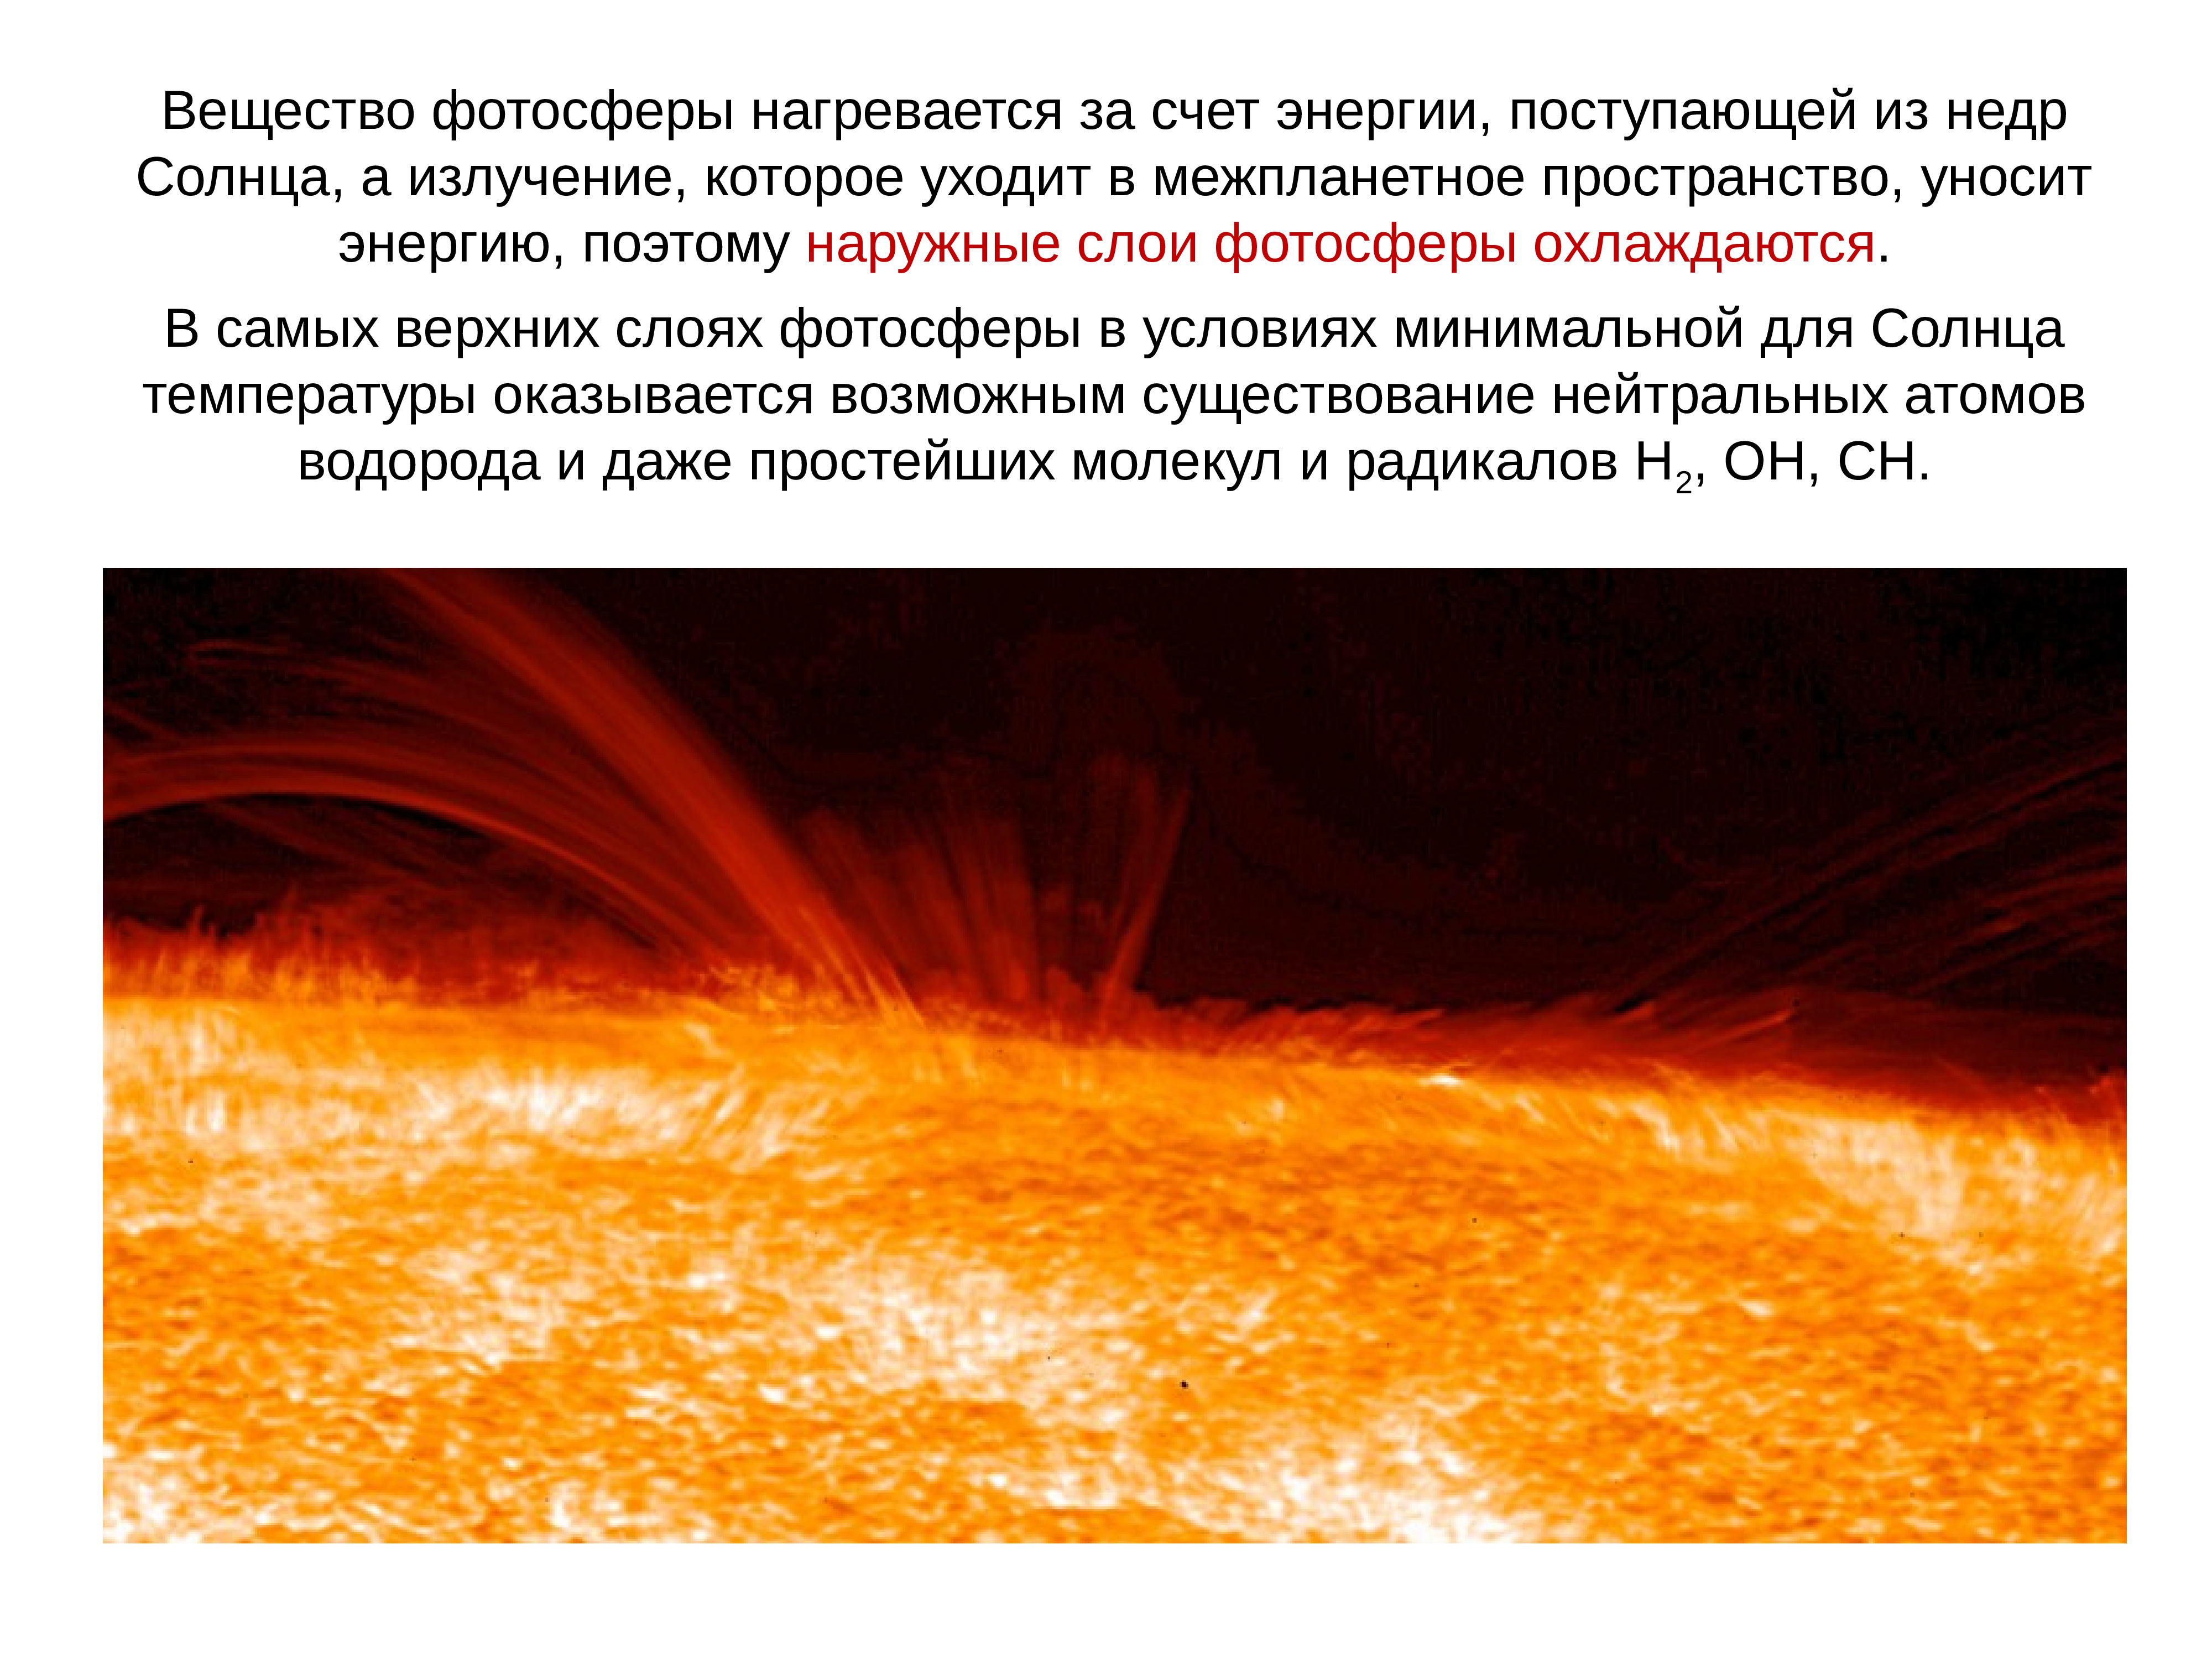 Солнечная атмосфера и солнечная активность. Фотосфера солнца. Атмосфера солнца. Слои солнца Фотосфера. Атмосфера солнца и Солнечная активность.